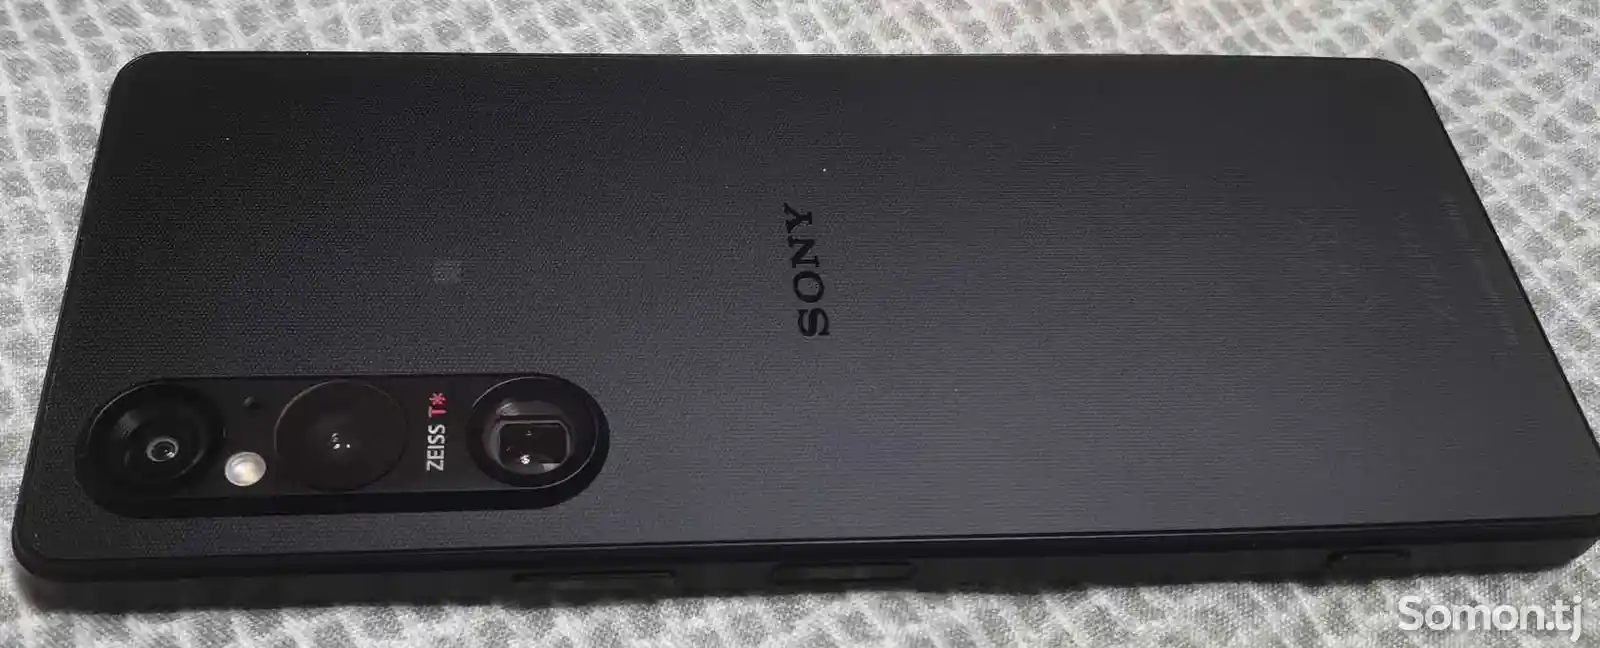 Sony Xperia 1 mark v-9